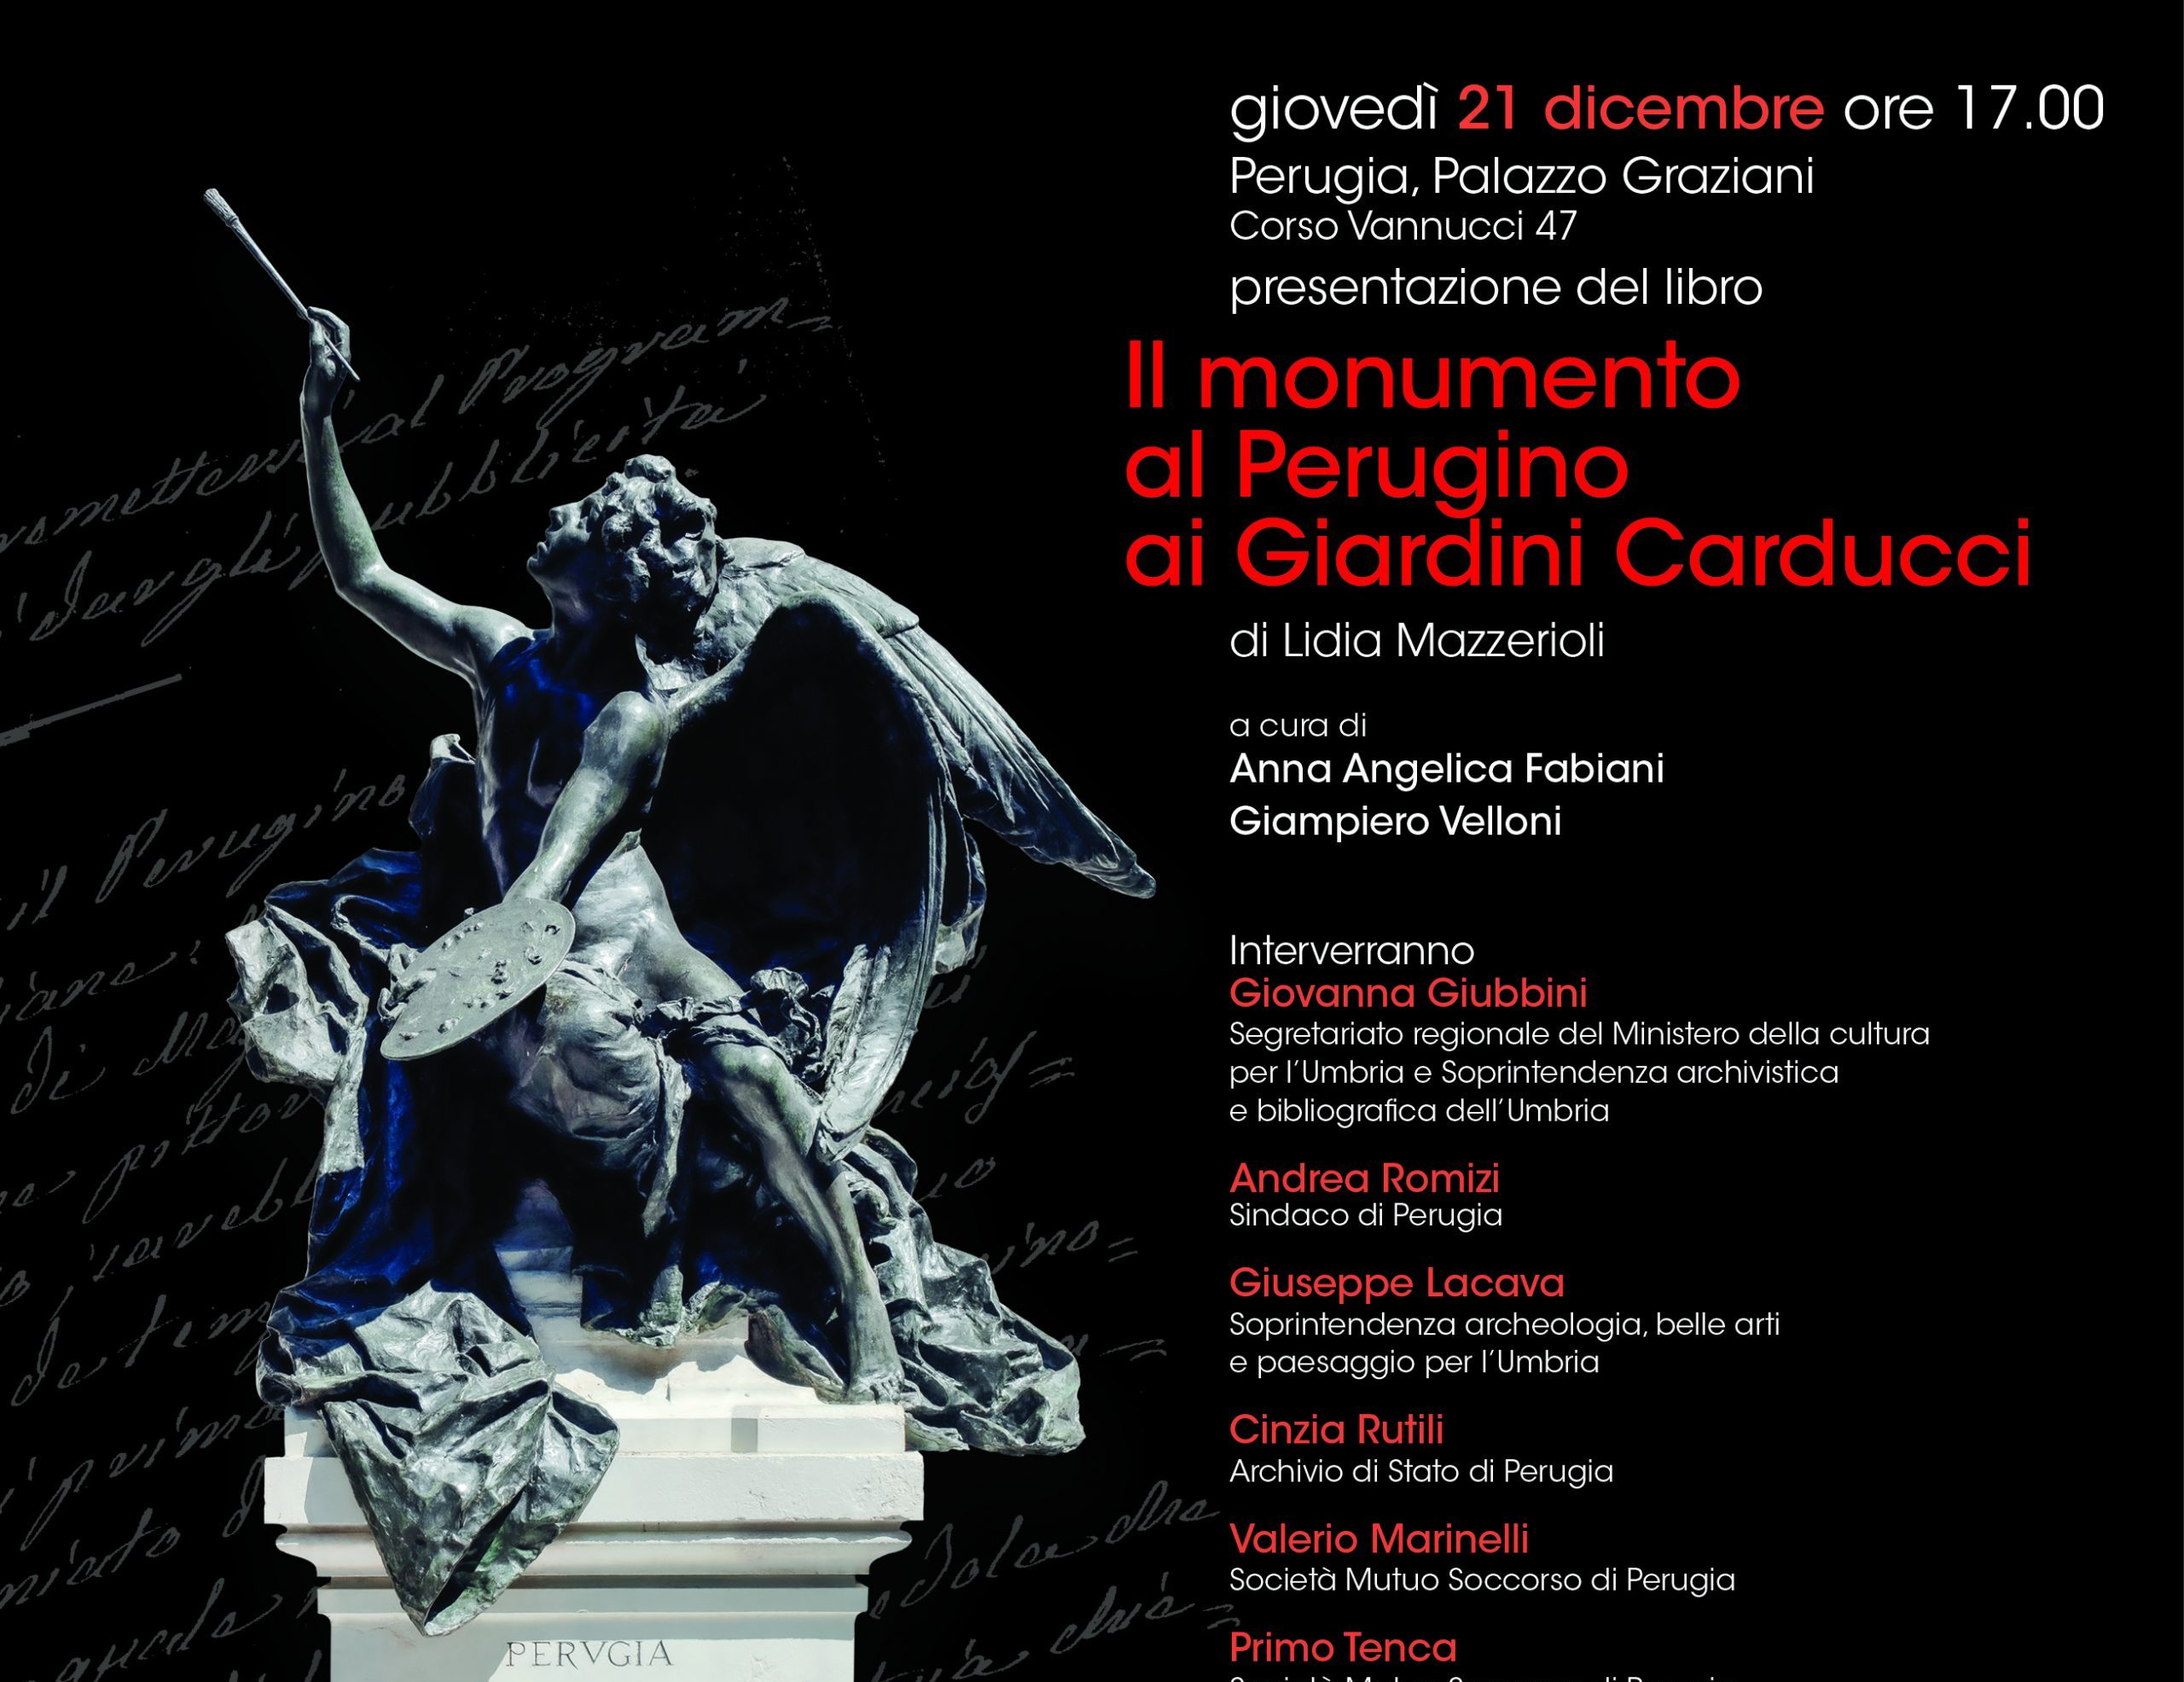 Presentazione del volume: “Il monumento al Perugino ai Giardini Carducci”